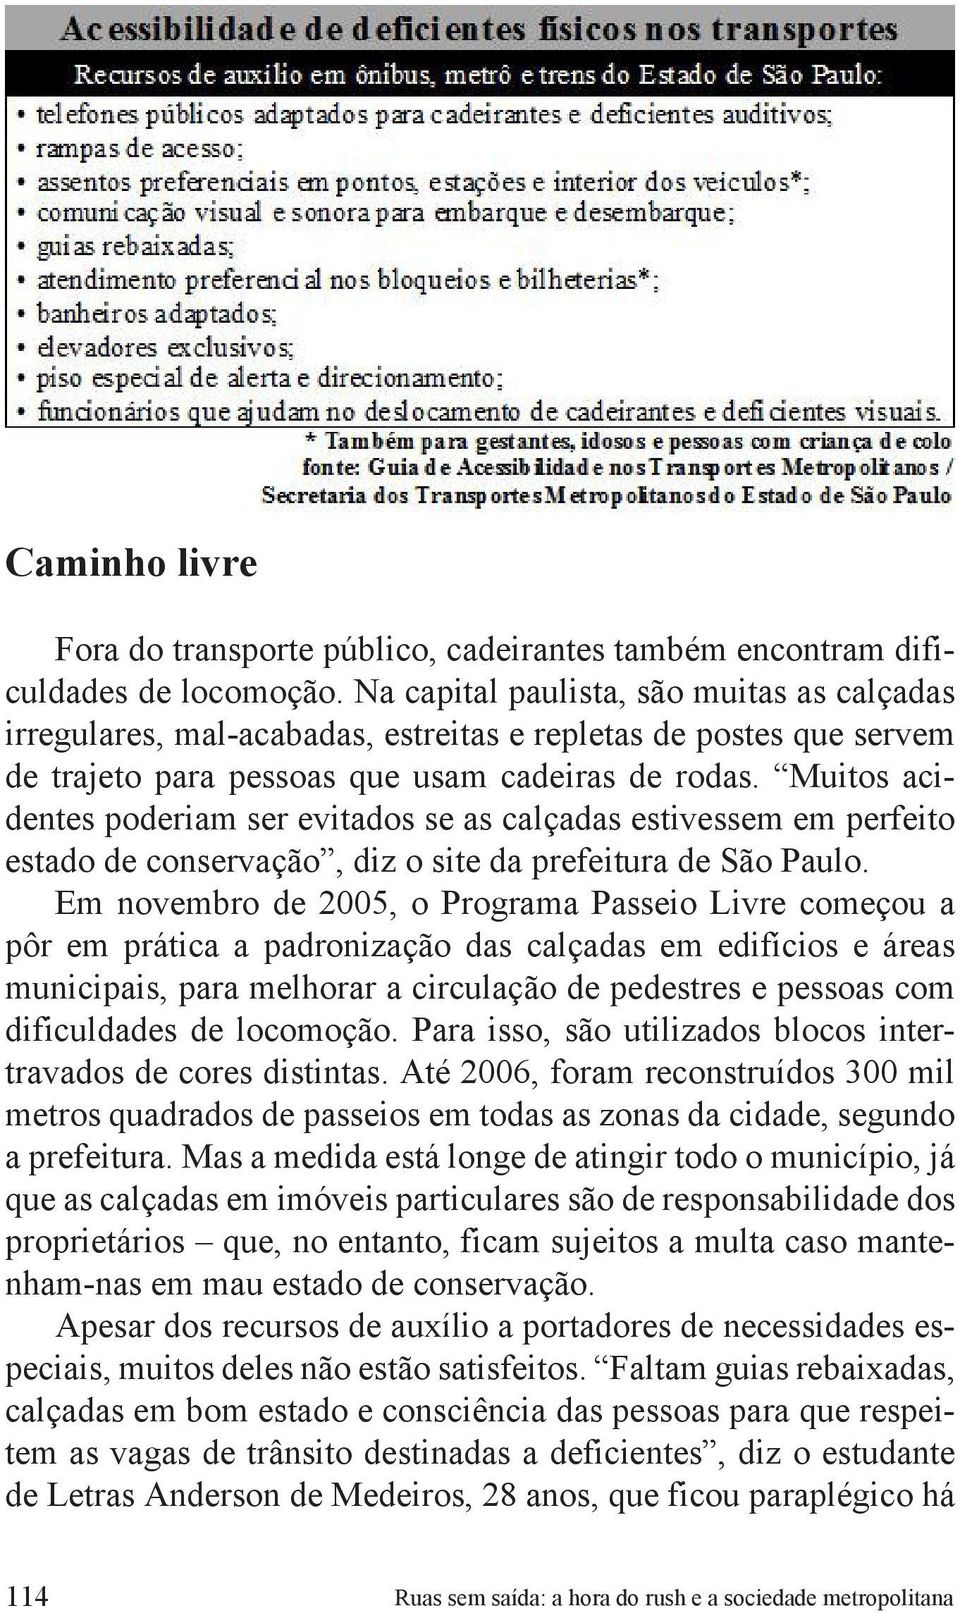 Muitos acidentes poderiam ser evitados se as calçadas estivessem em perfeito estado de conservação, diz o site da prefeitura de São Paulo.